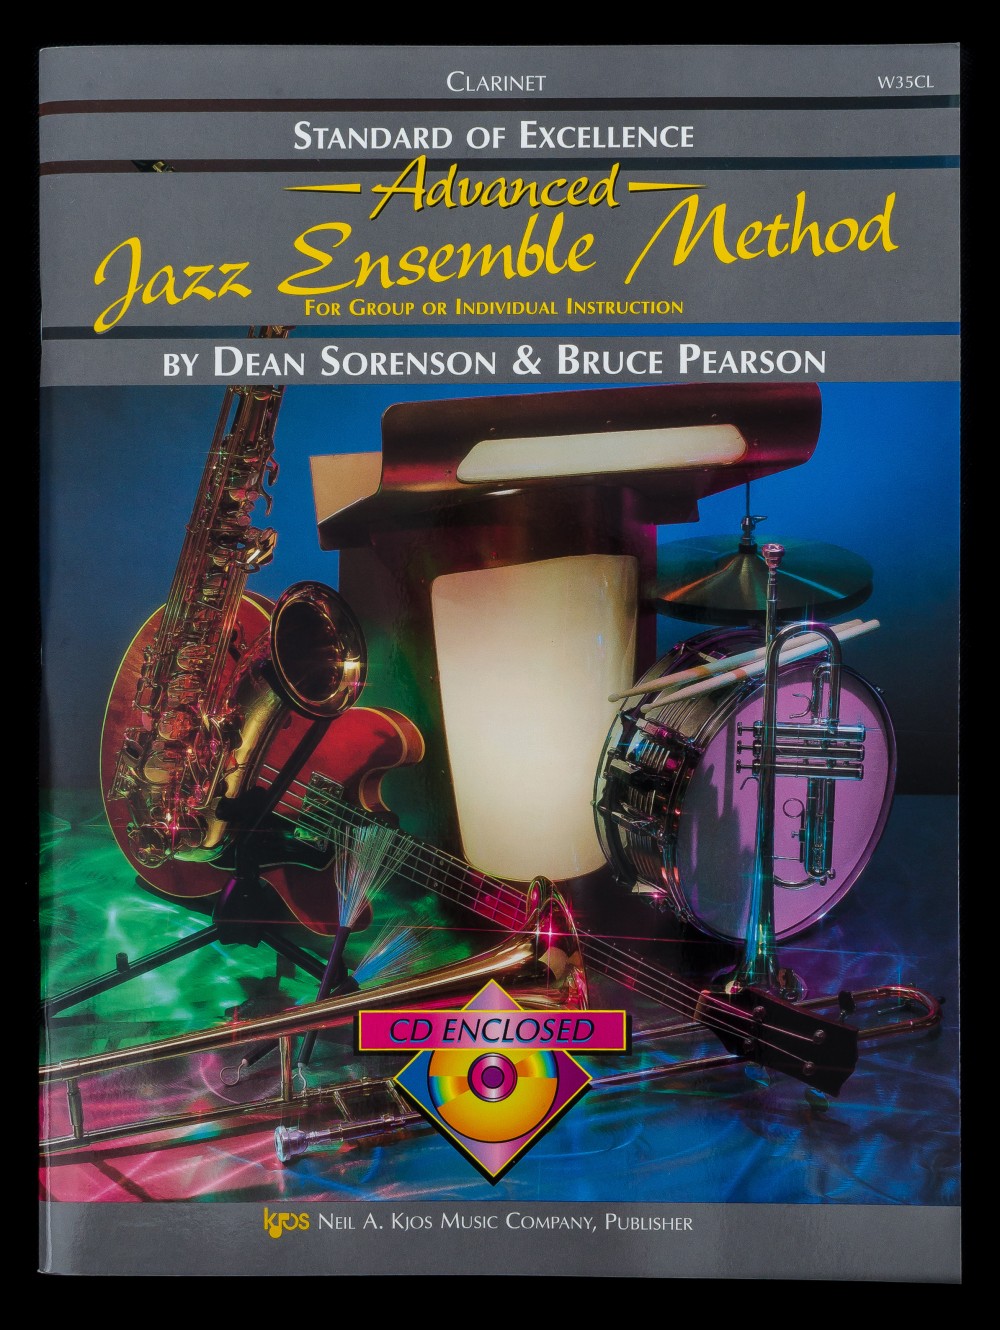 Jazz Ensemble Method Advanced